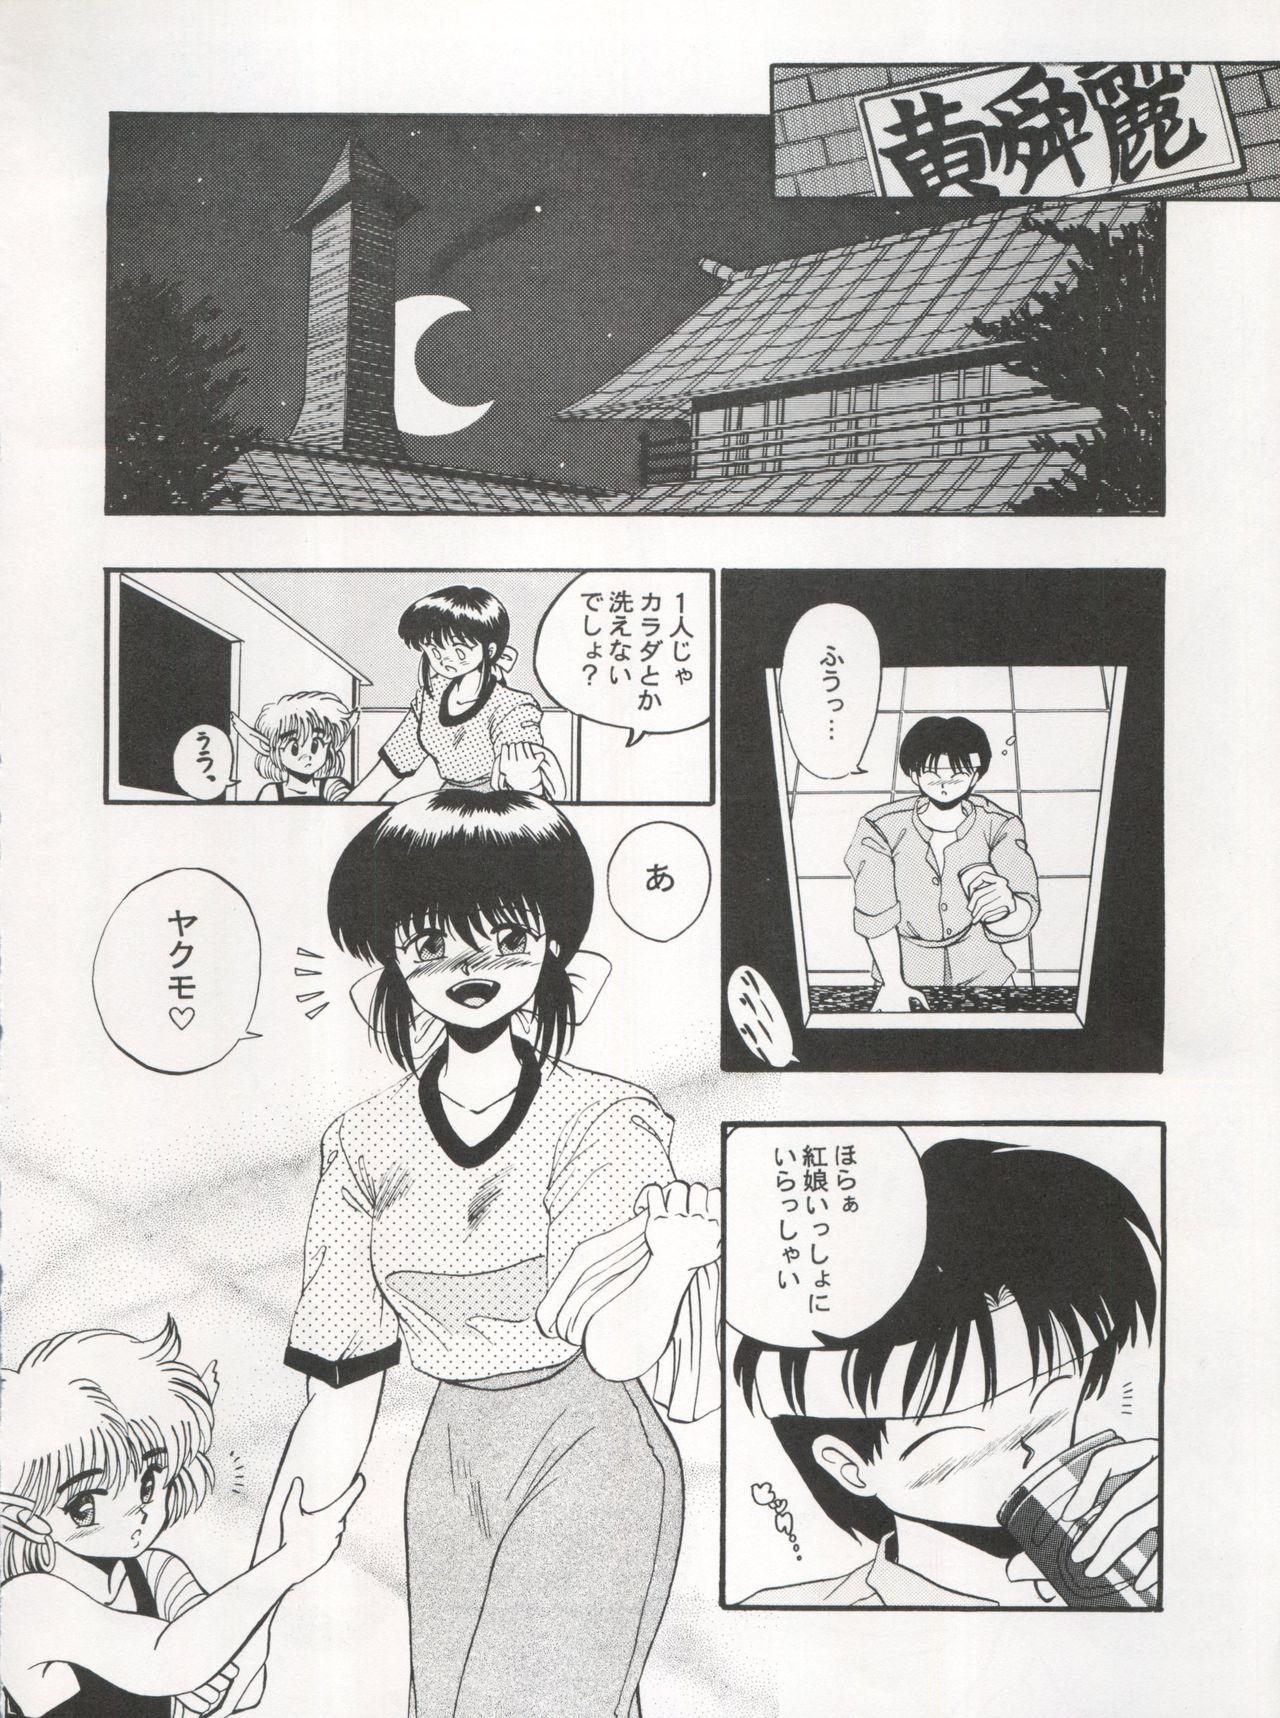 Amateur 逮捕されちゃうぞ - Fushigi no umi no nadia Youre under arrest Minky momo 3x3 eyes Celebrity Nudes - Page 12